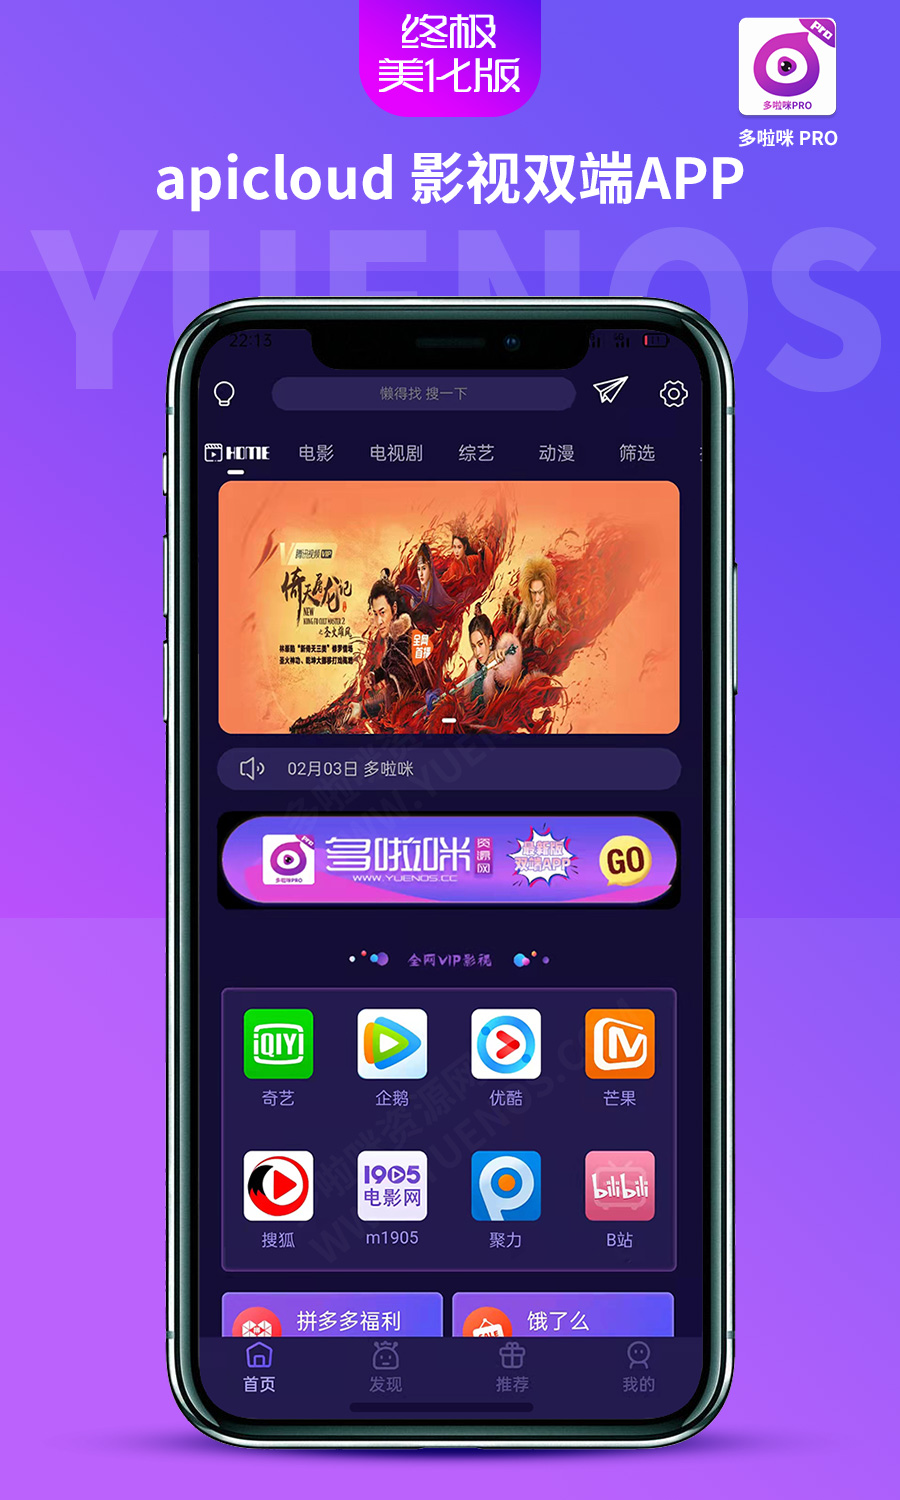 2022全新ui 8.0前端深蓝紫主题发布apicloud影视双端app/多啦咪pro/终极美化版后端采用授权形式|紫咖啡小站